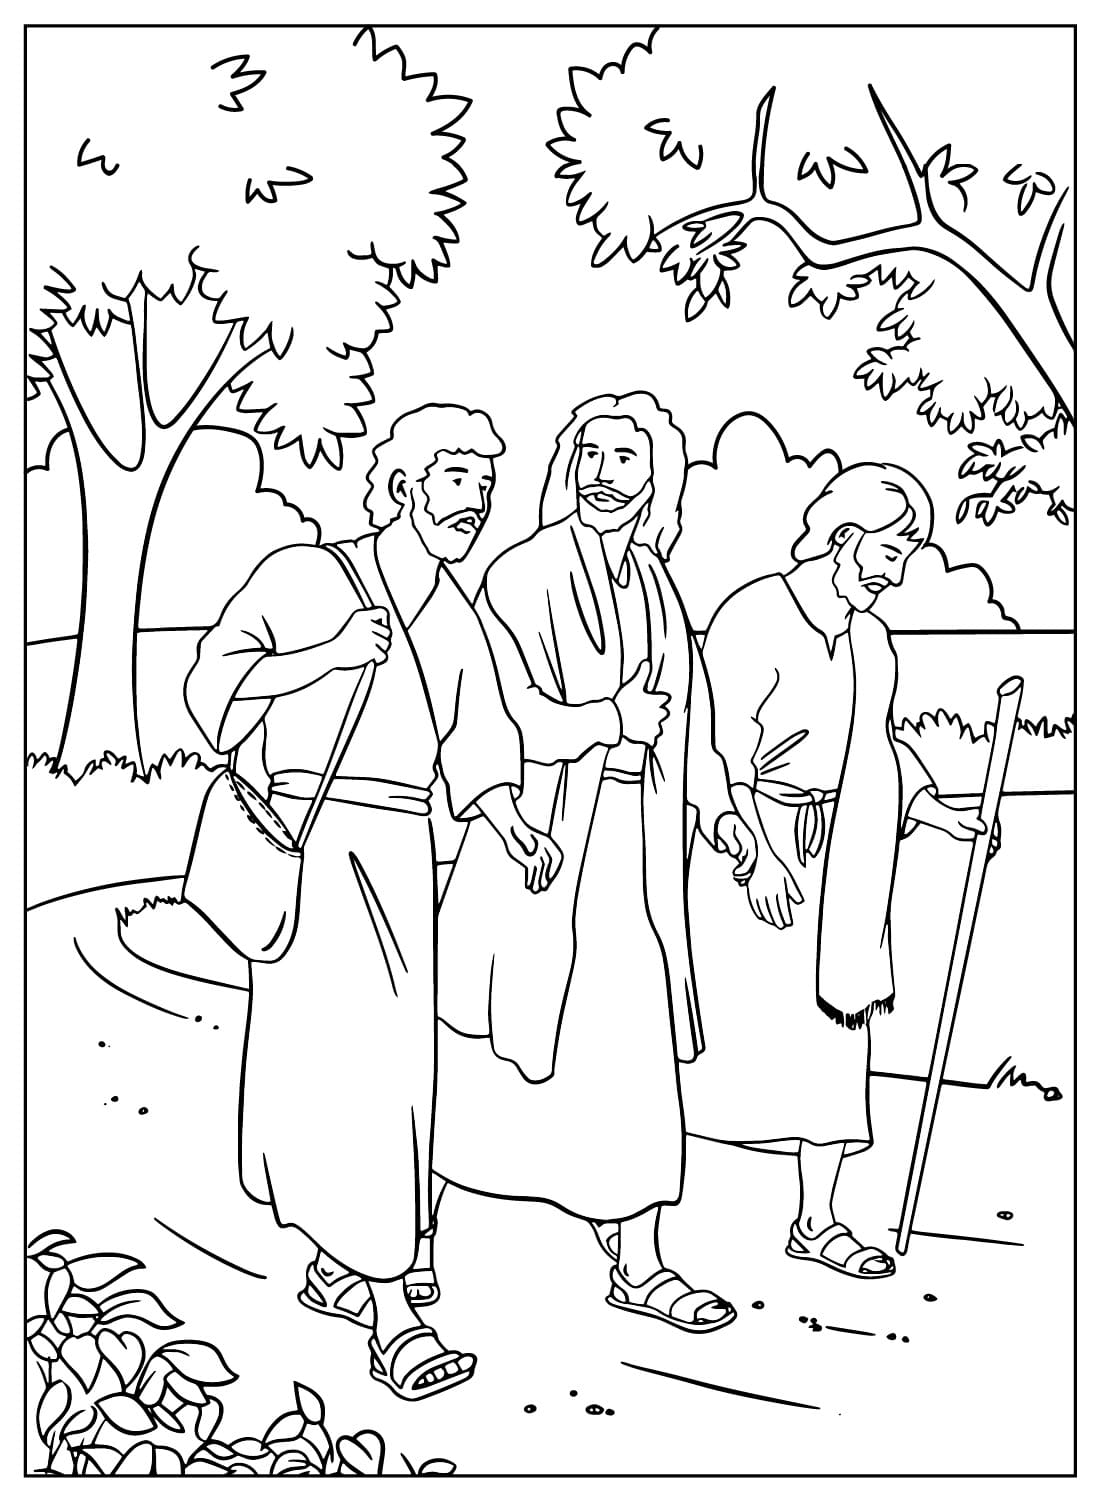 Jezus met zijn twee discipelen op weg naar Emmaüs